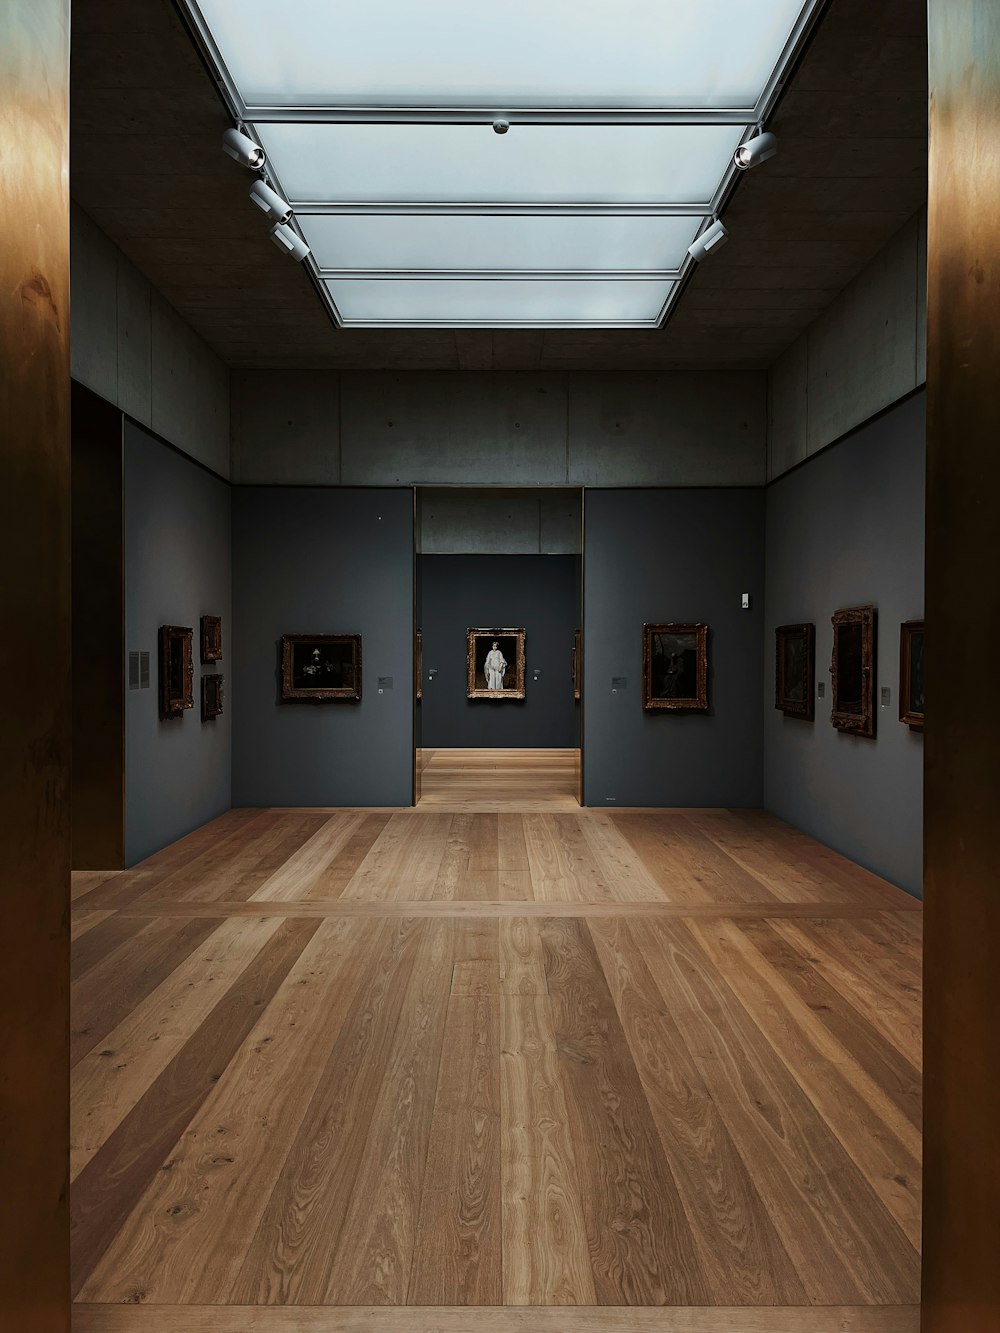 Una habitación con suelo de madera y arte en la pared